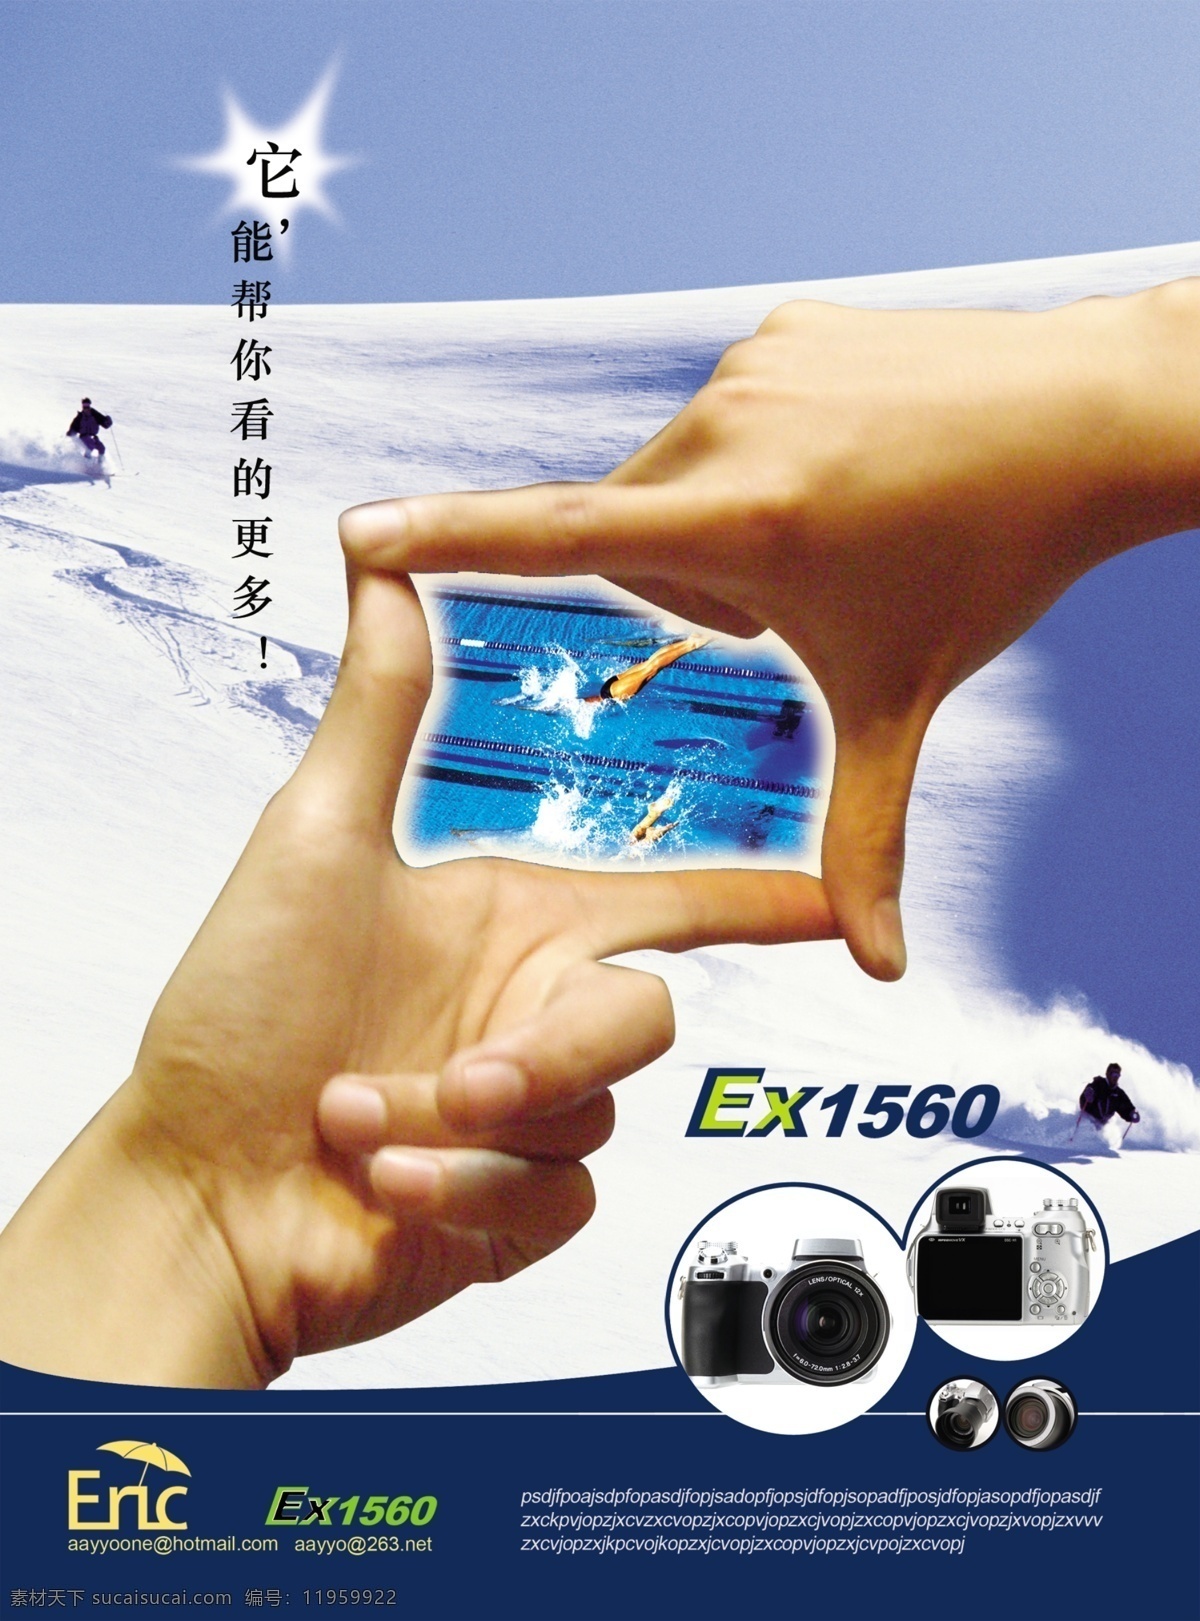 dm宣传单 分层 冲浪 广告设计模板 滑雪 手 相机 广告 模板下载 相机广告 源文件 psd源文件